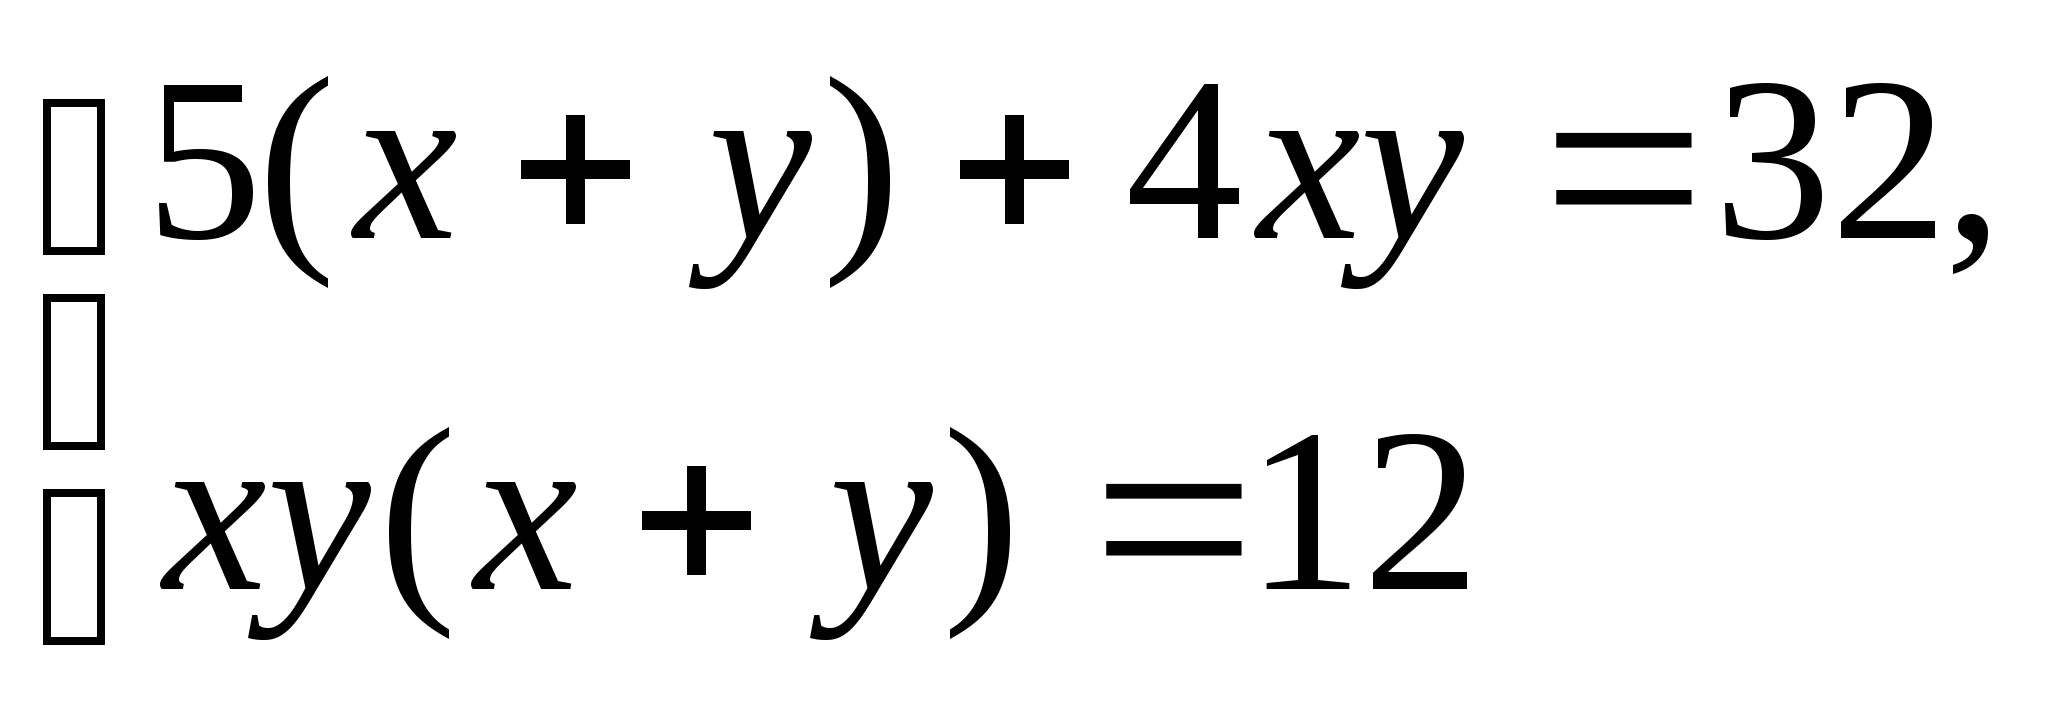 Конспект урока по алгебре в 9 классе на тему Методы решения систем уравнений. Метод введения новых переменных.